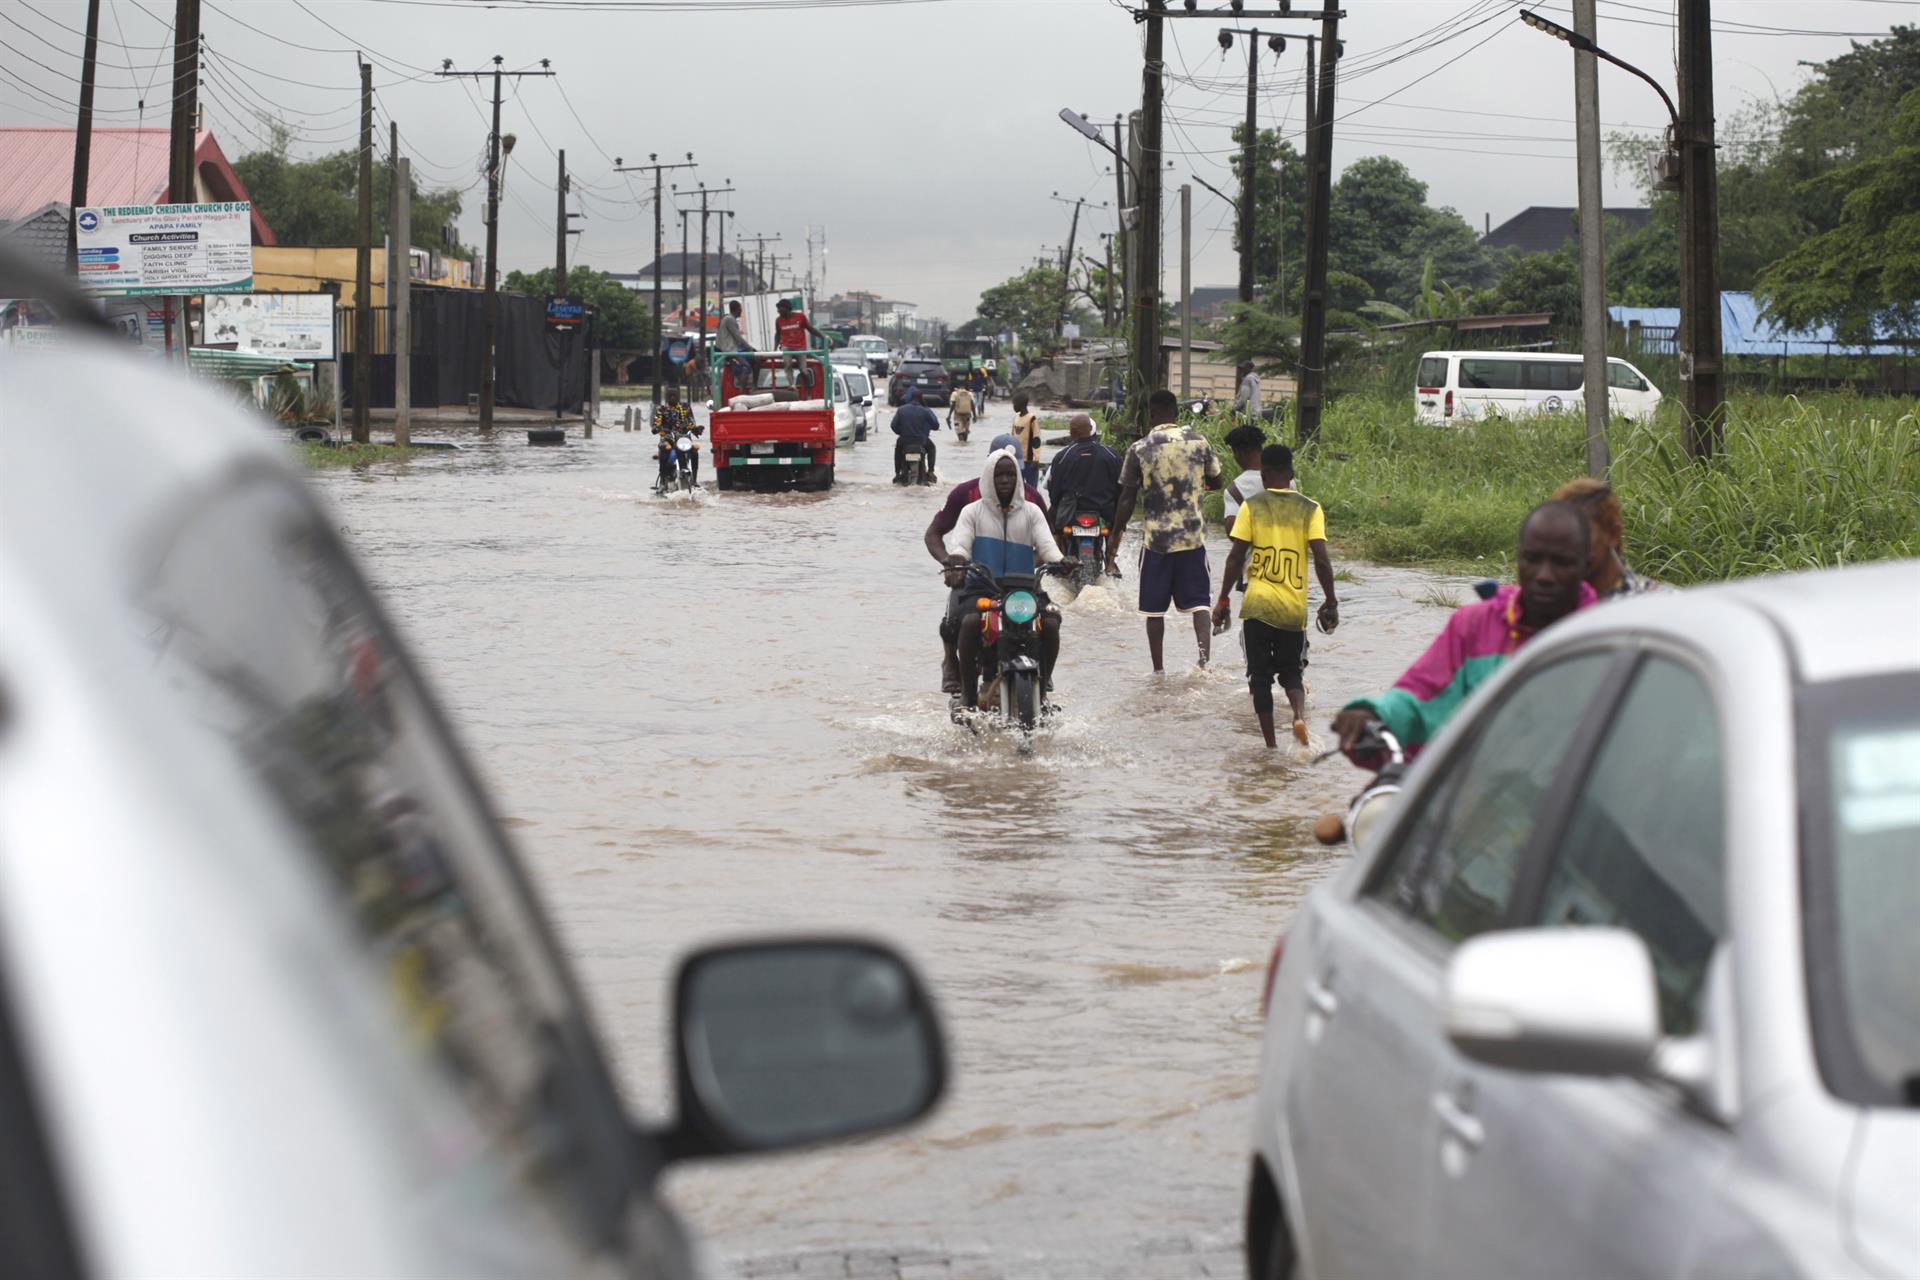 Suben a más de 600 los muertos por las inundaciones en Nigeria en 2022